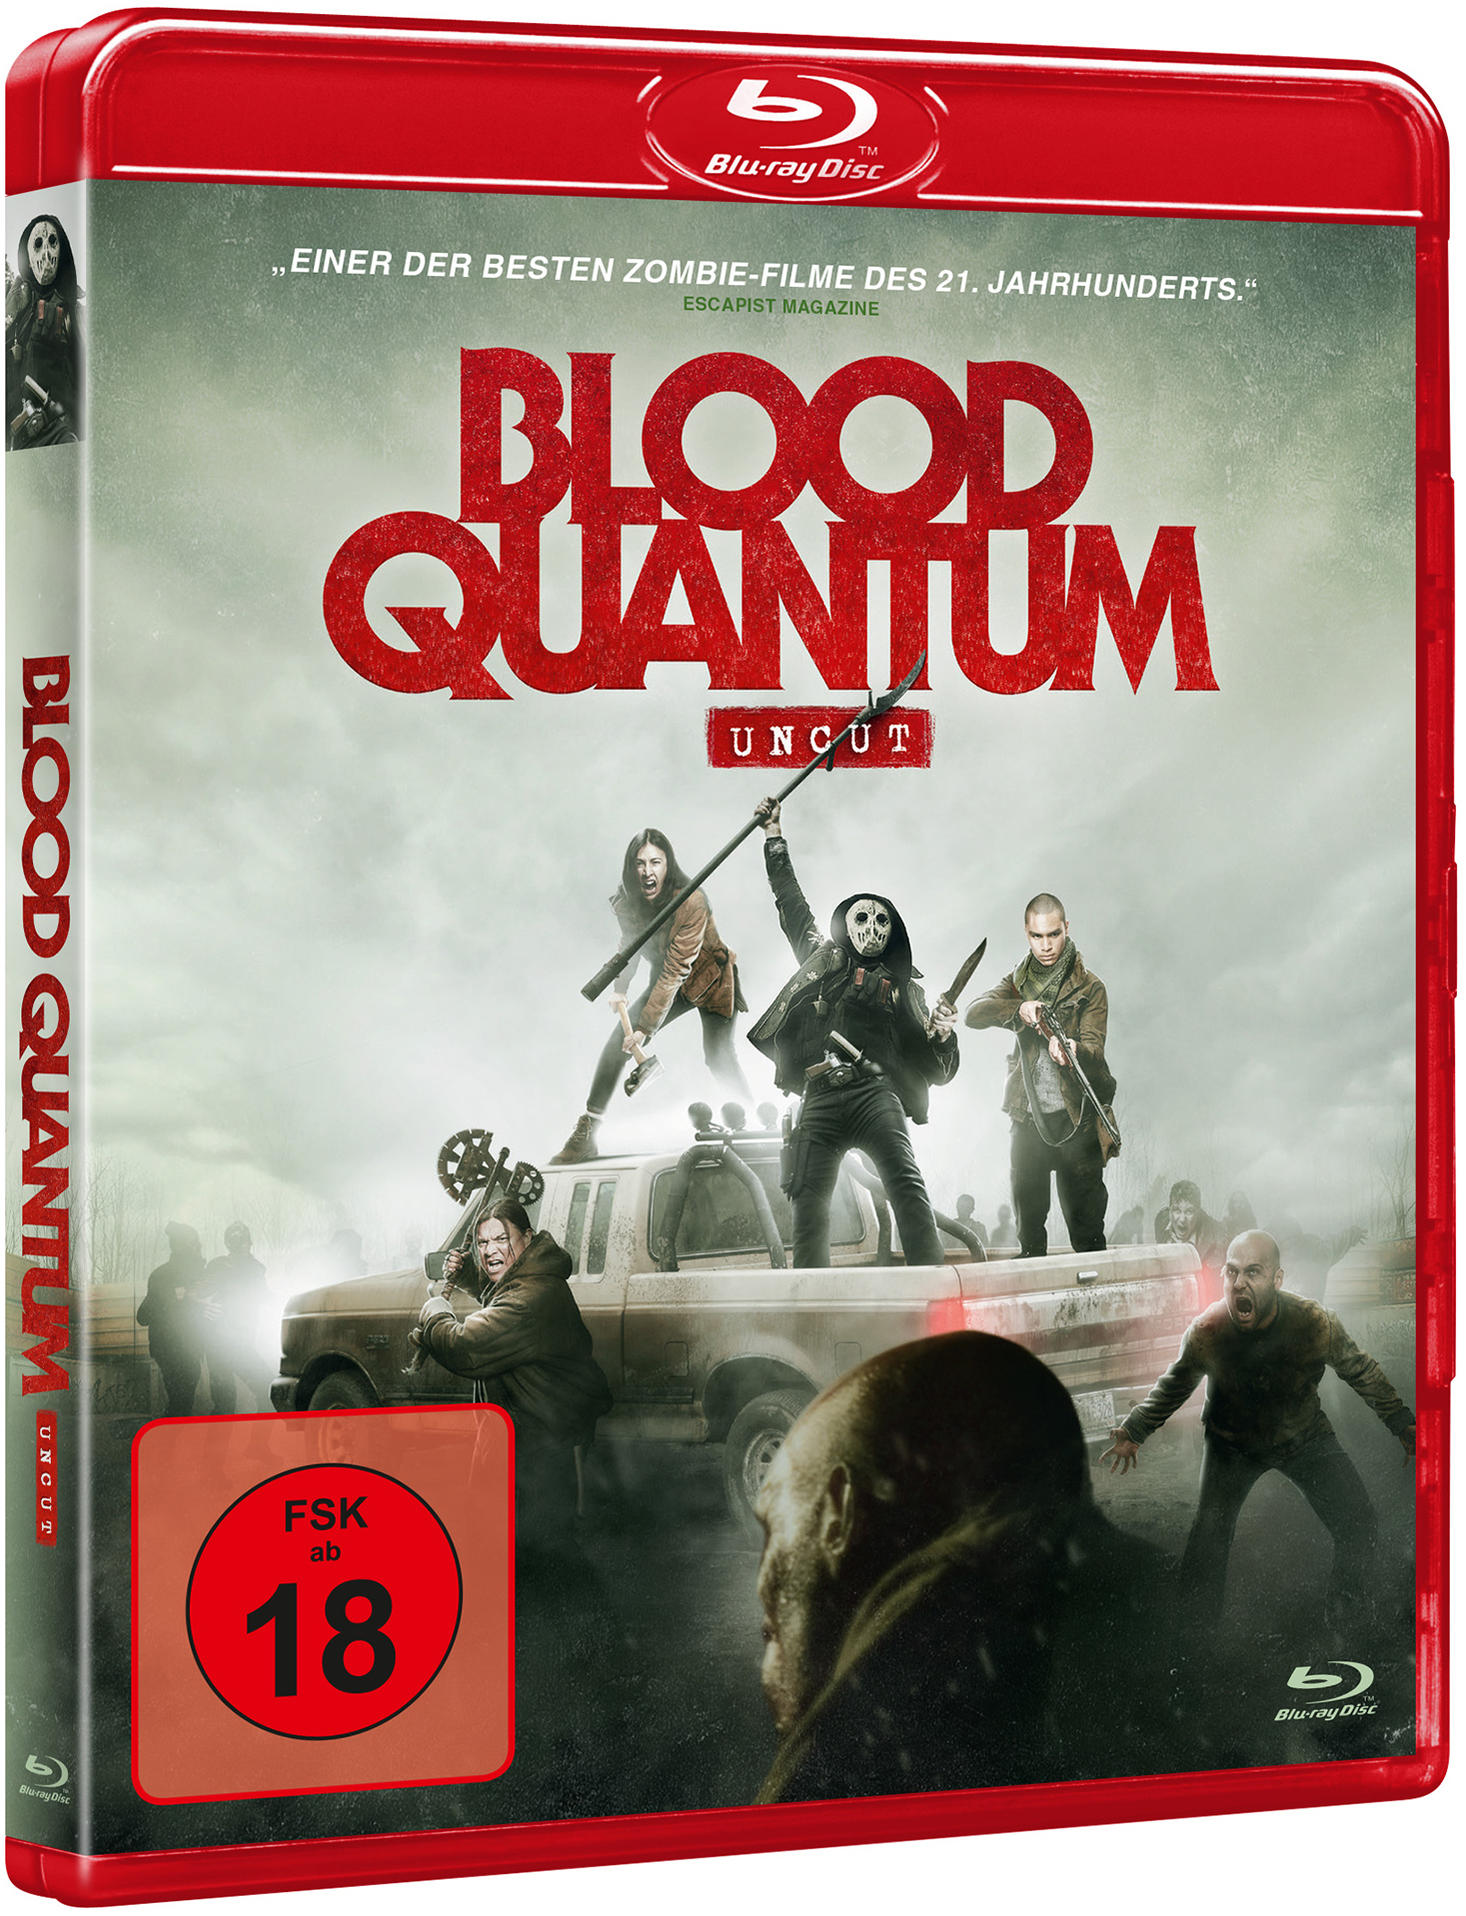 Blood Quantum Blu-ray